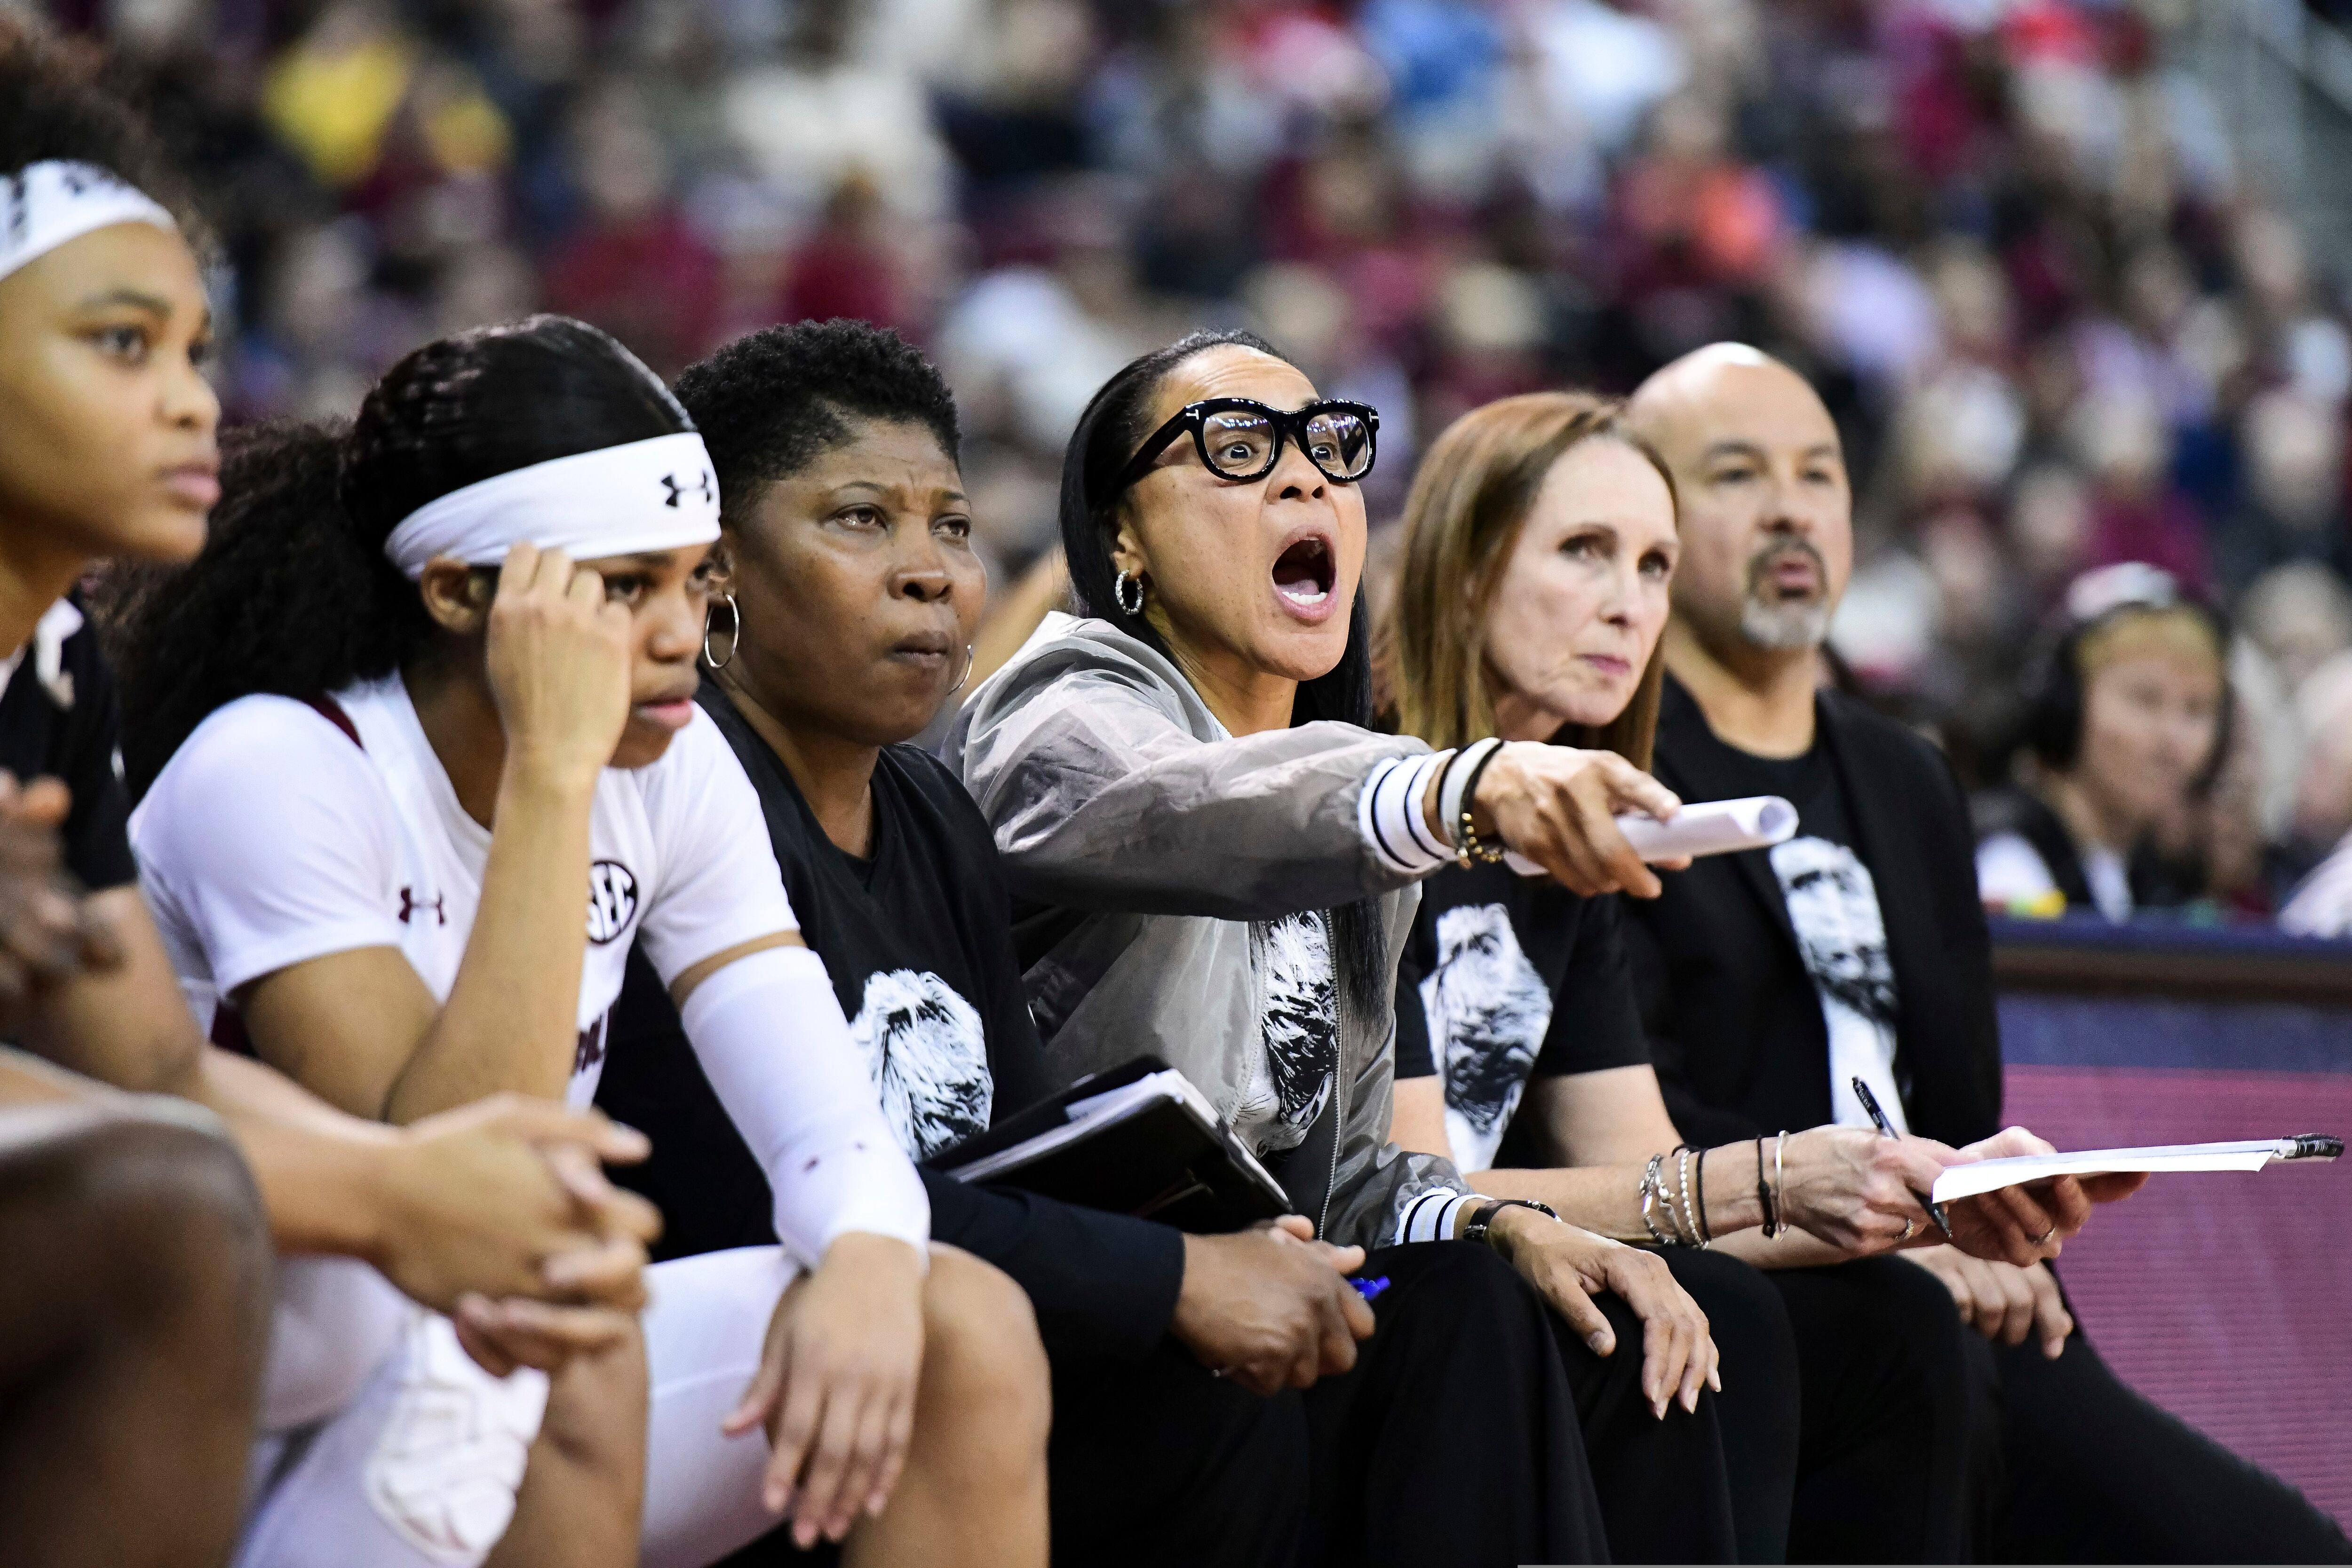 South Carolina Basketball coach Dawn Staley had a big night in Philly